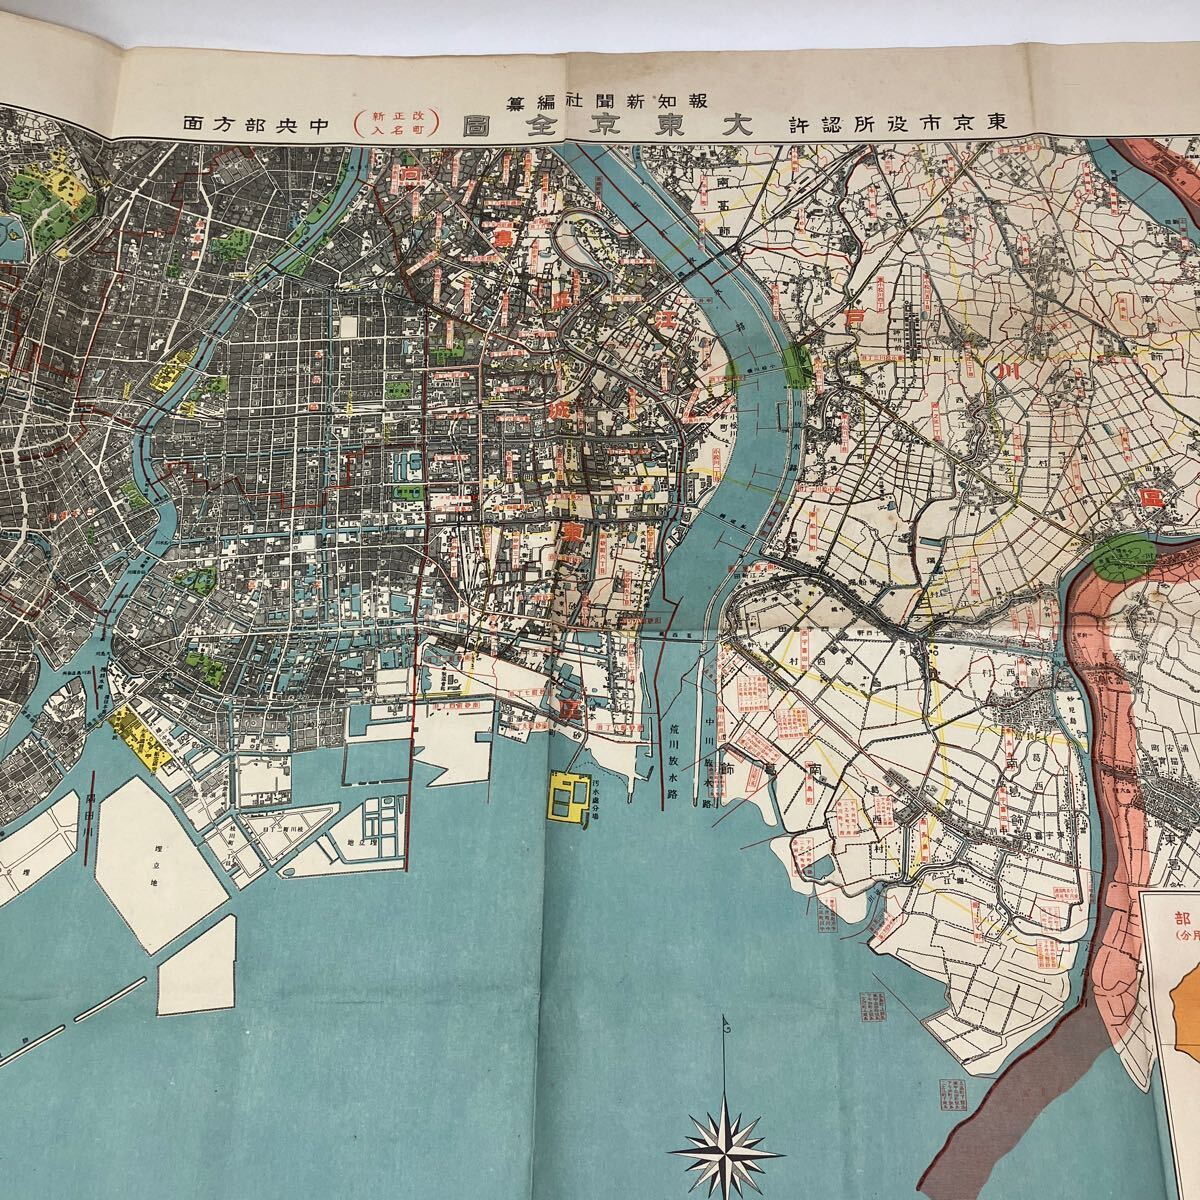 Y0321n[ карта ] суммировать 7 листов Tokyo Yokohama город центр часть направление юг часть направление суша земля измерение часть ... контактный блок ... память полный 50 год память старая карта 